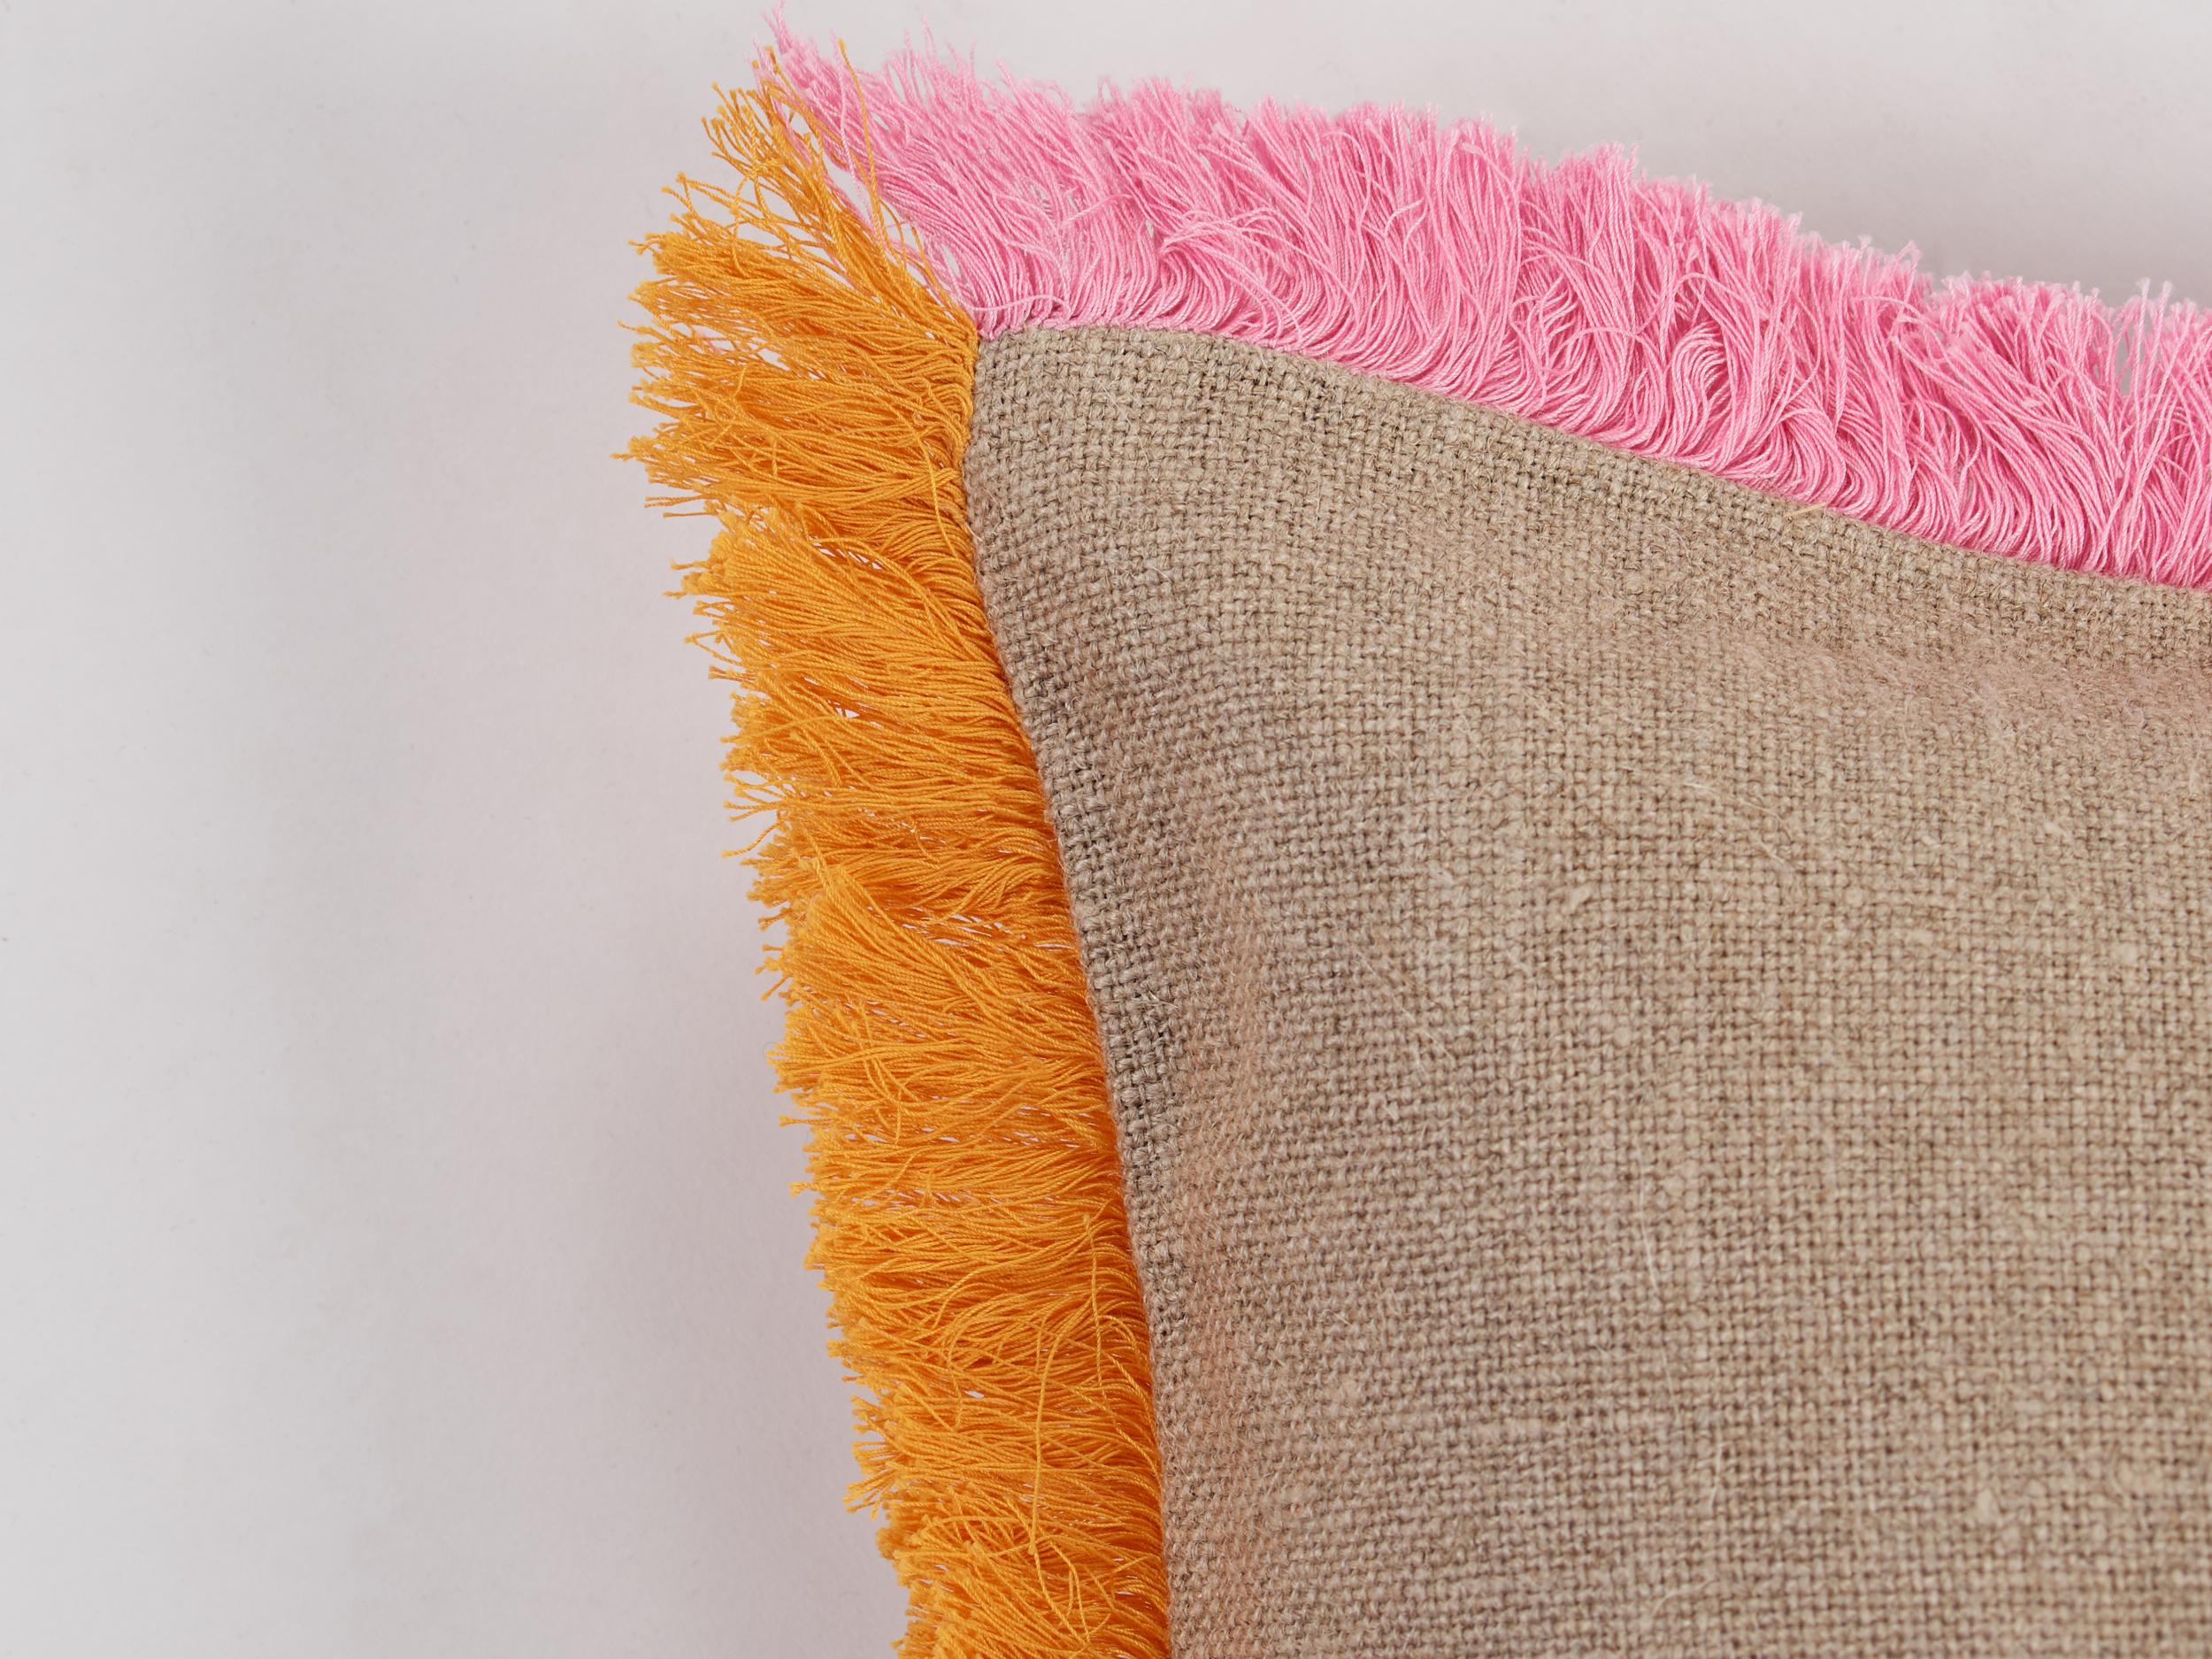 La bordure à franges rose et orange est entièrement brodée à la main sur du lin naturel de haute qualité. Un coussin comme celui-ci peut transformer instantanément un espace.
Taille standard 50 x 50 cm. Personnalisable dans d'autres tailles et/ou